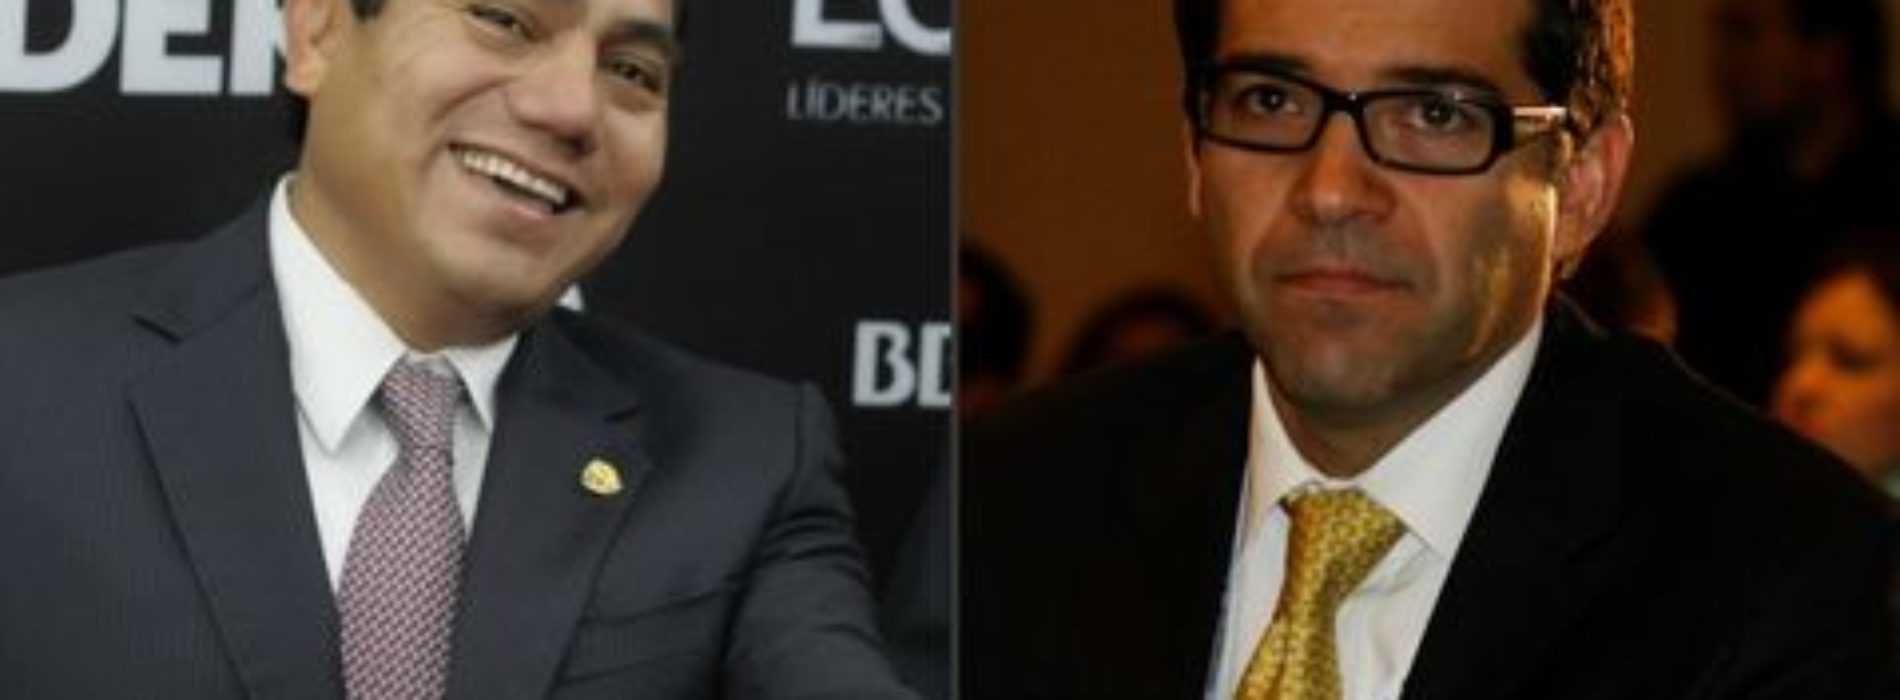 Debate entre candidatos de Colima costó 1.7 mdp: INE